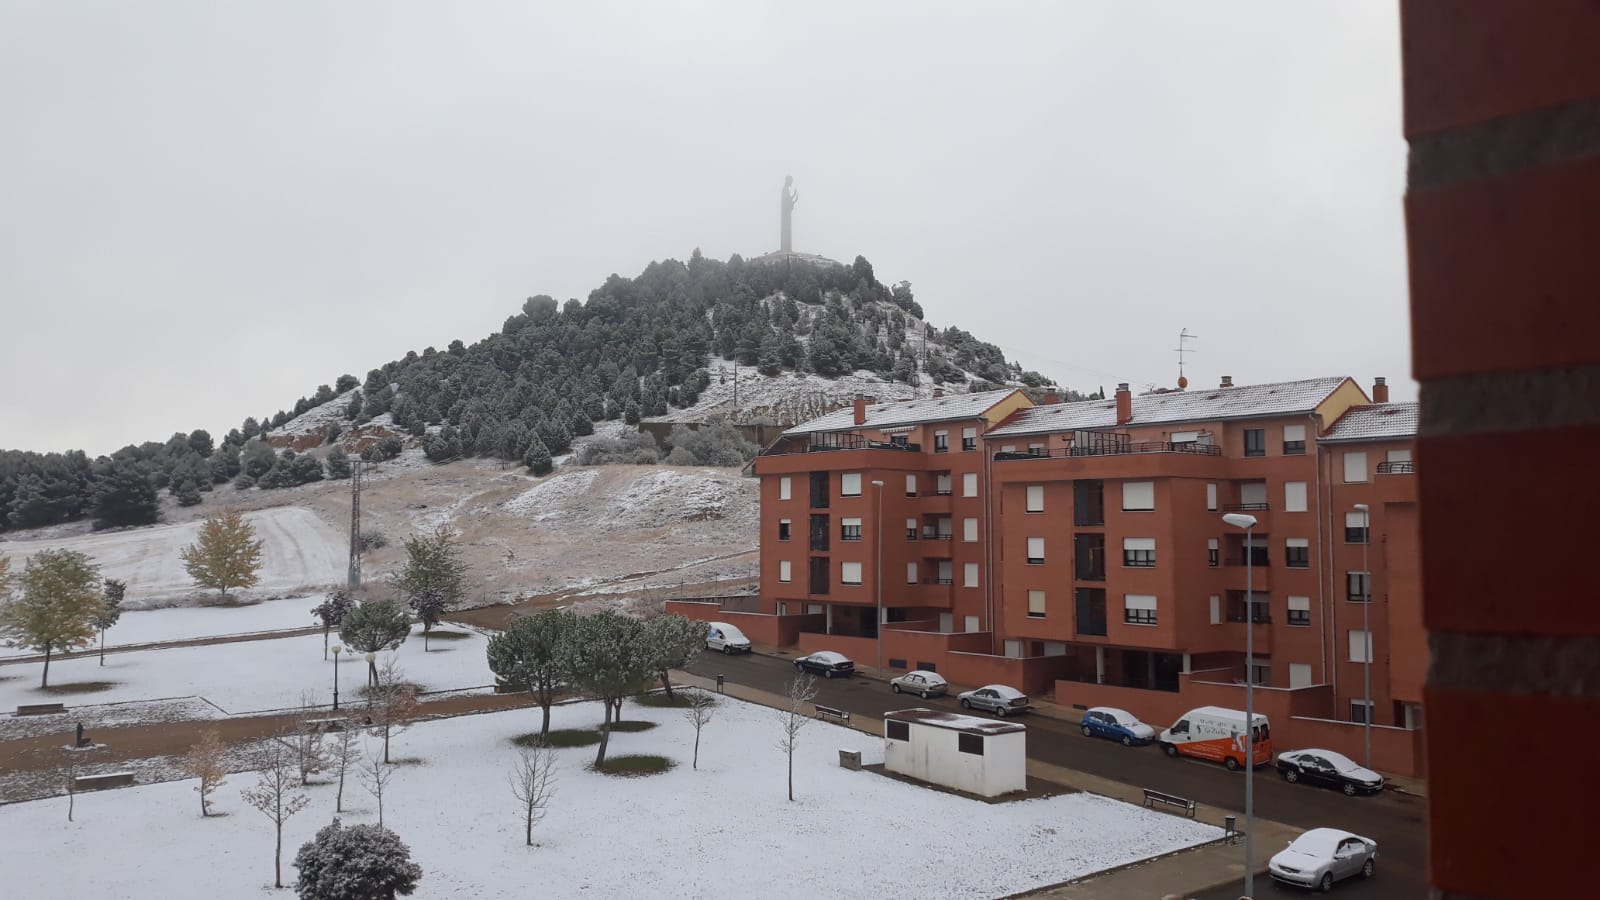 Fotos: Las imágenes que ha dejado la primera nevada otoñal en Palencia